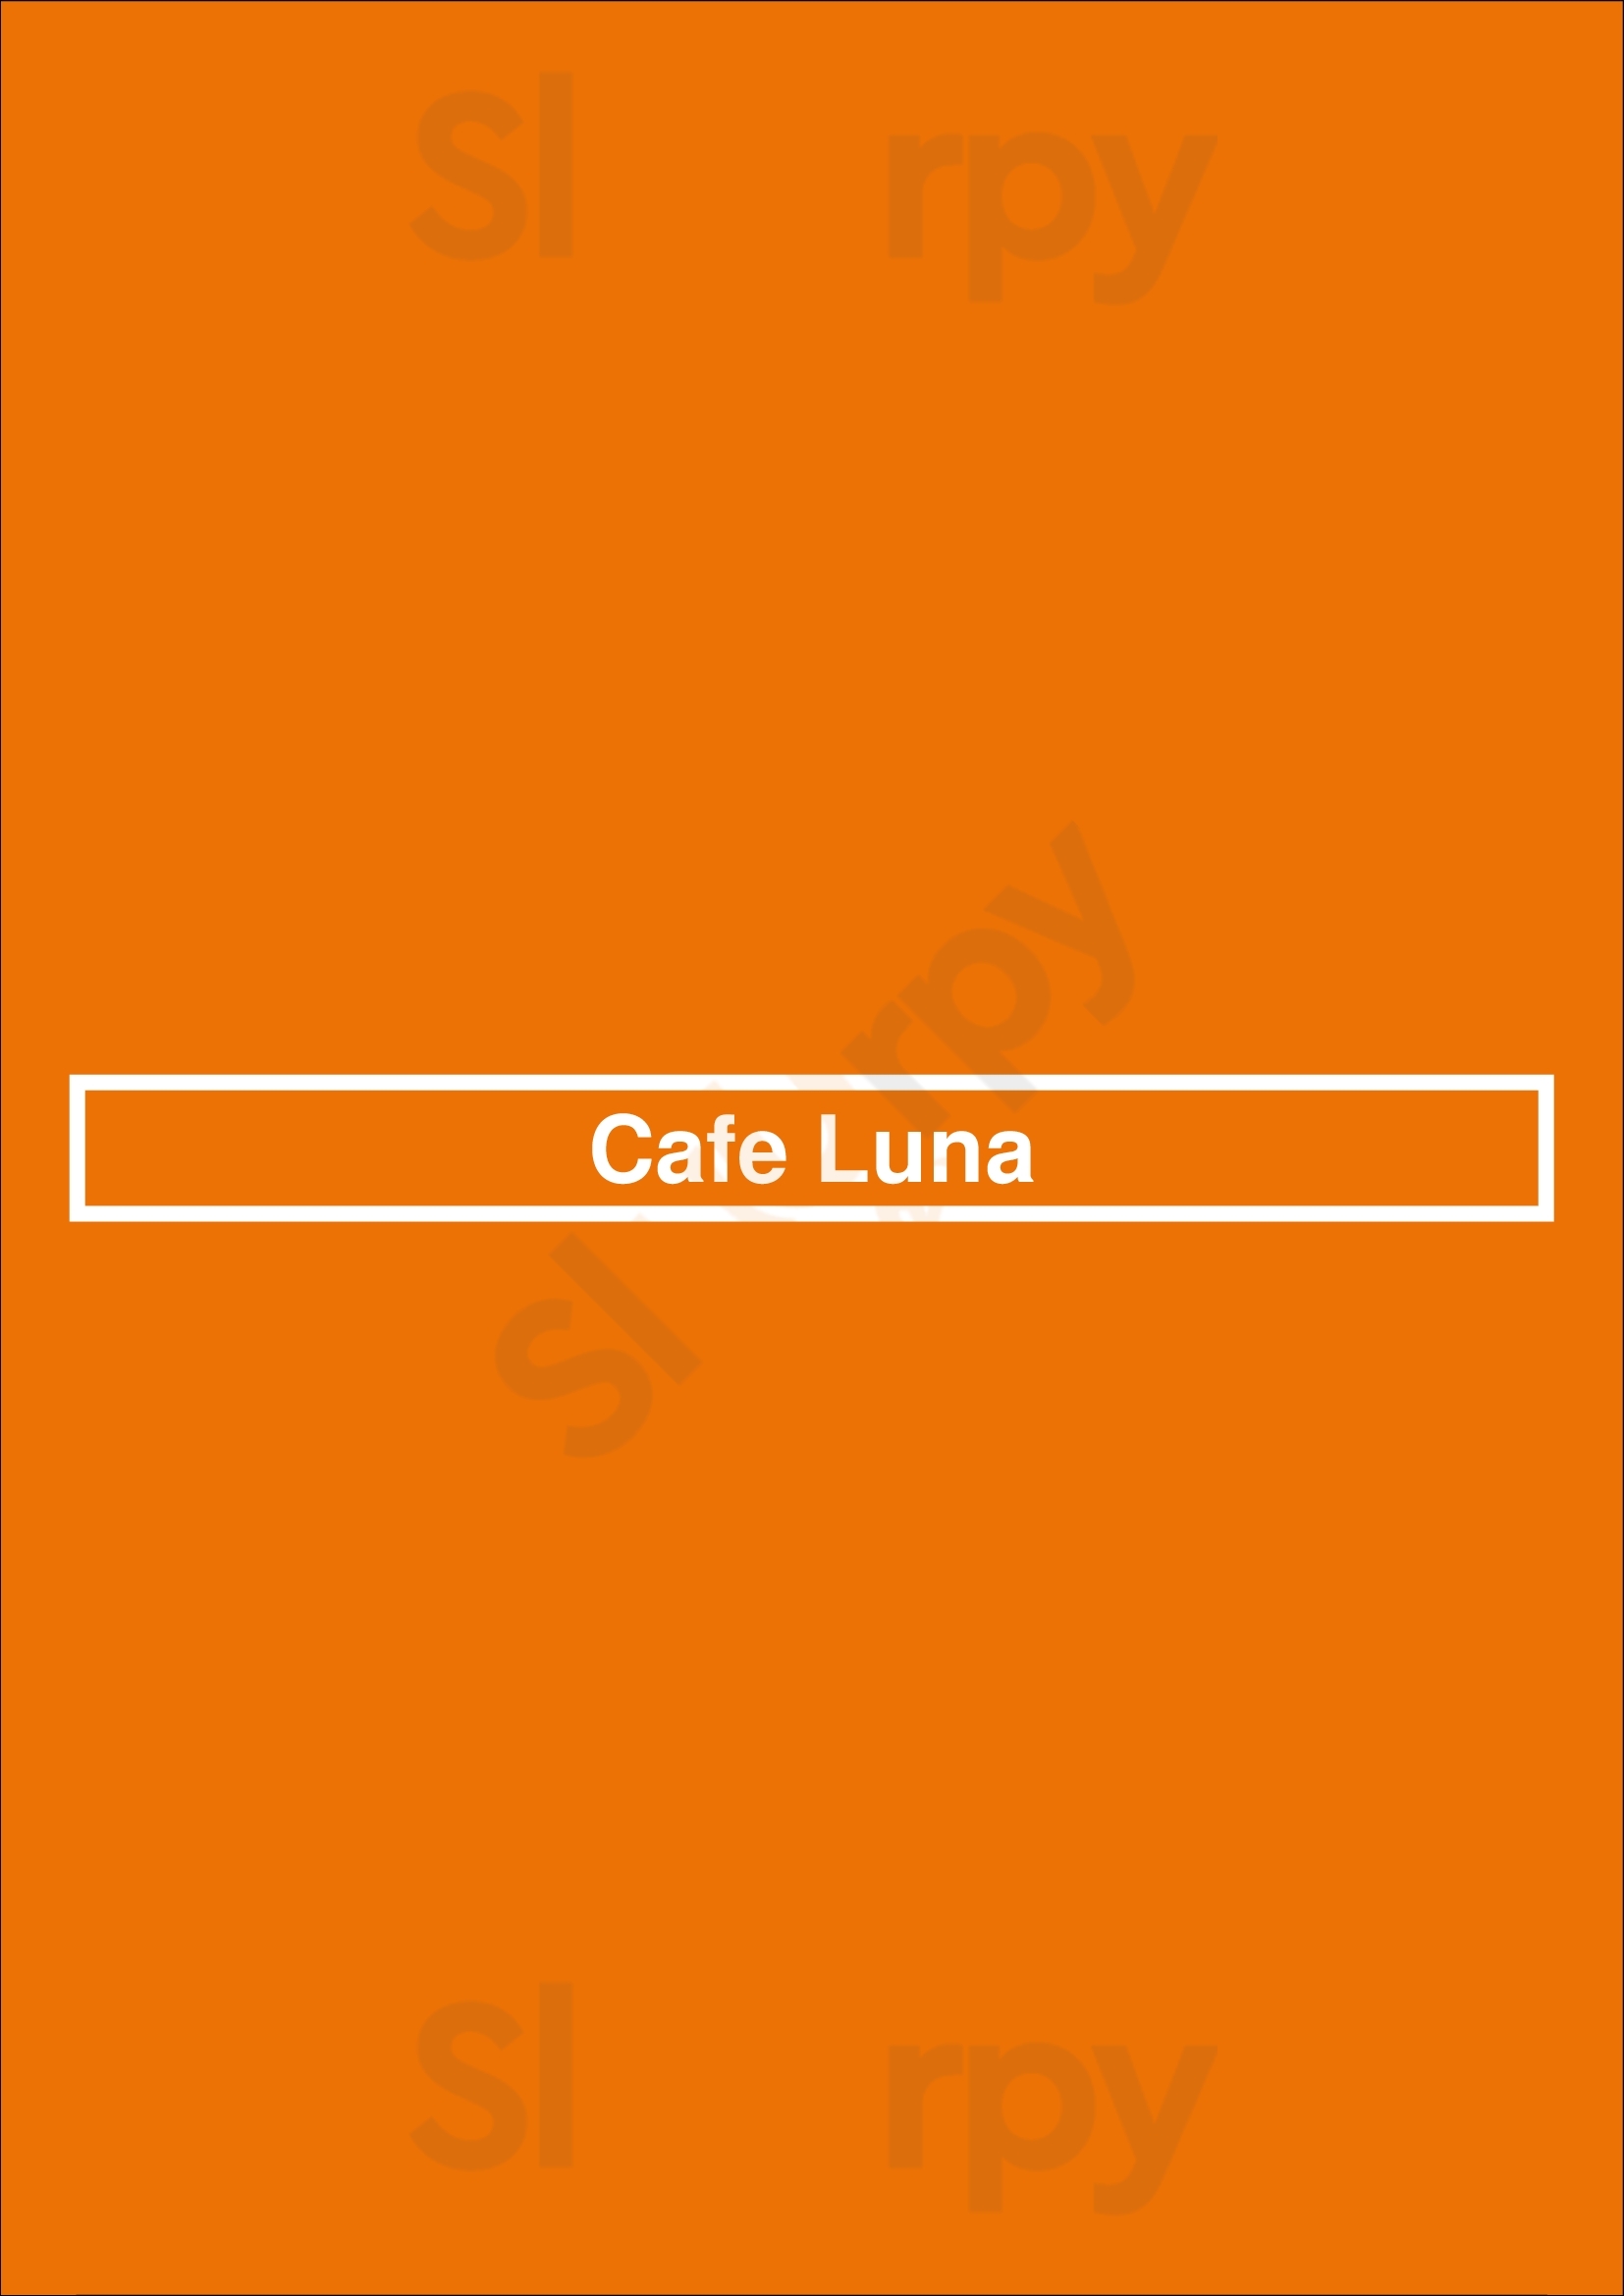 Cafe Luna Naples Menu - 1